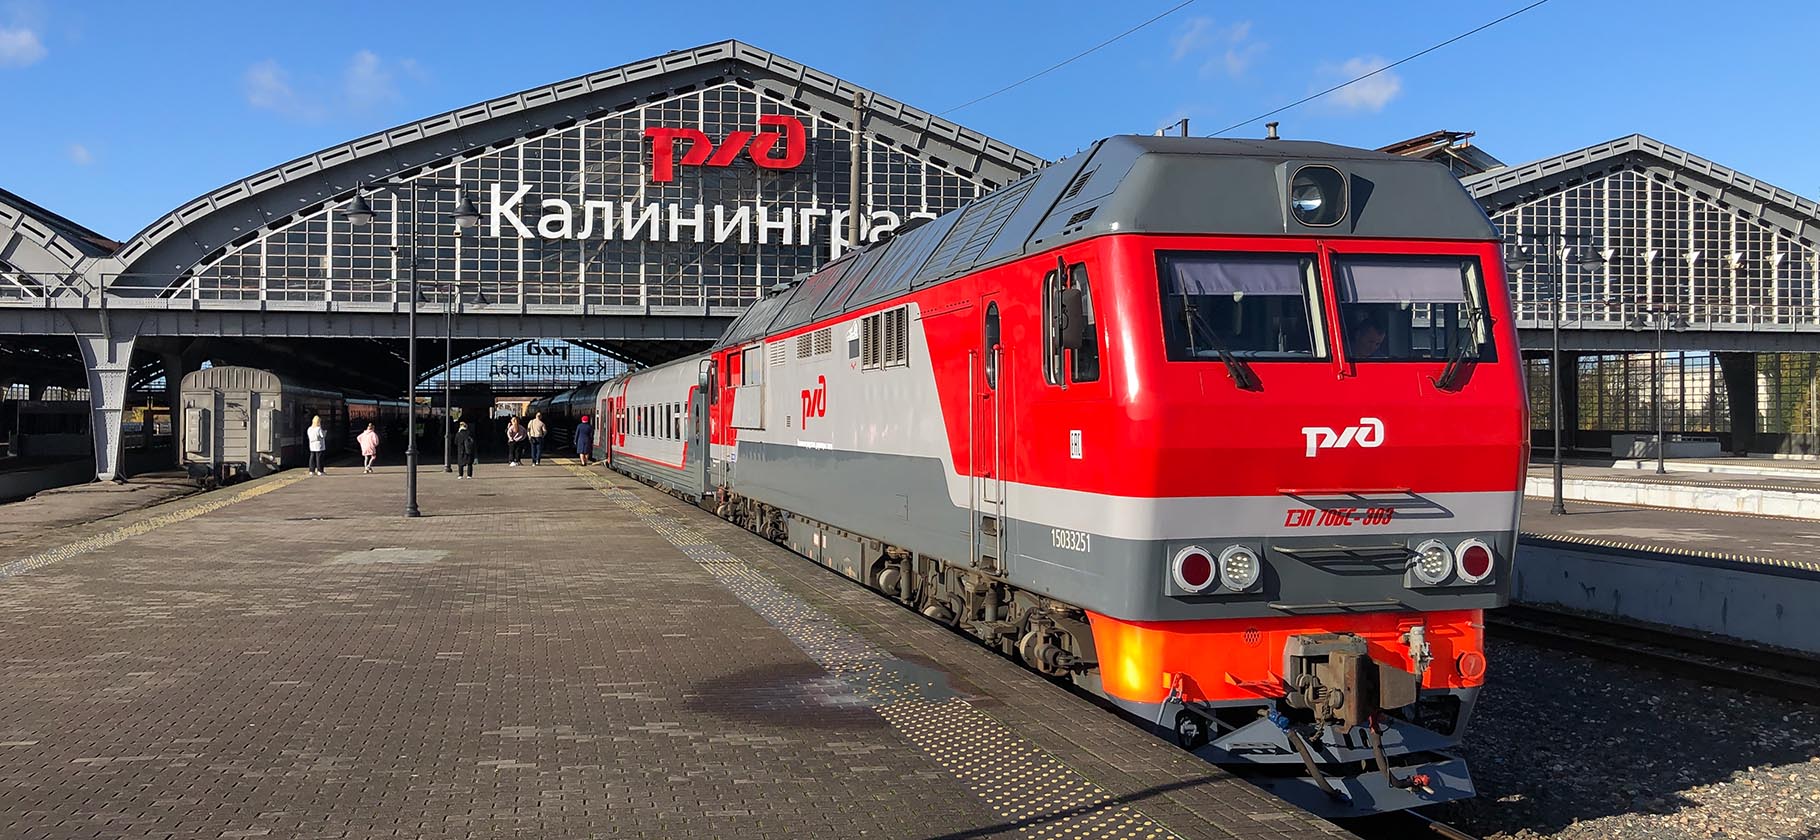 Правила въезда в Калининград на поезде упростили: теперь туда могут попасть белорусы